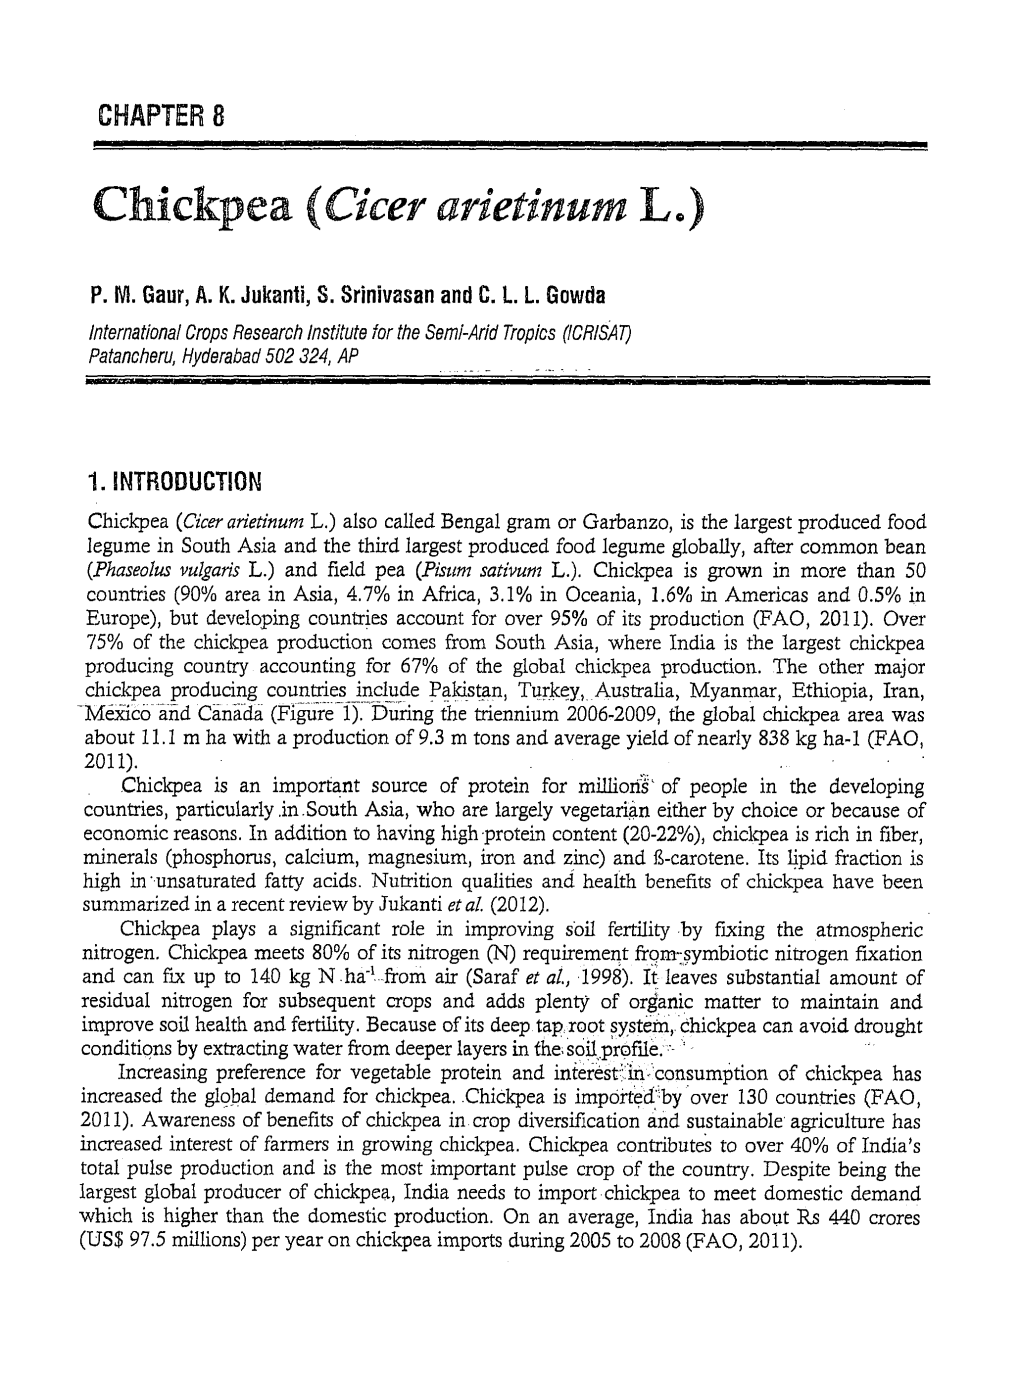 Chickpea (Cicer Arietinum L.)